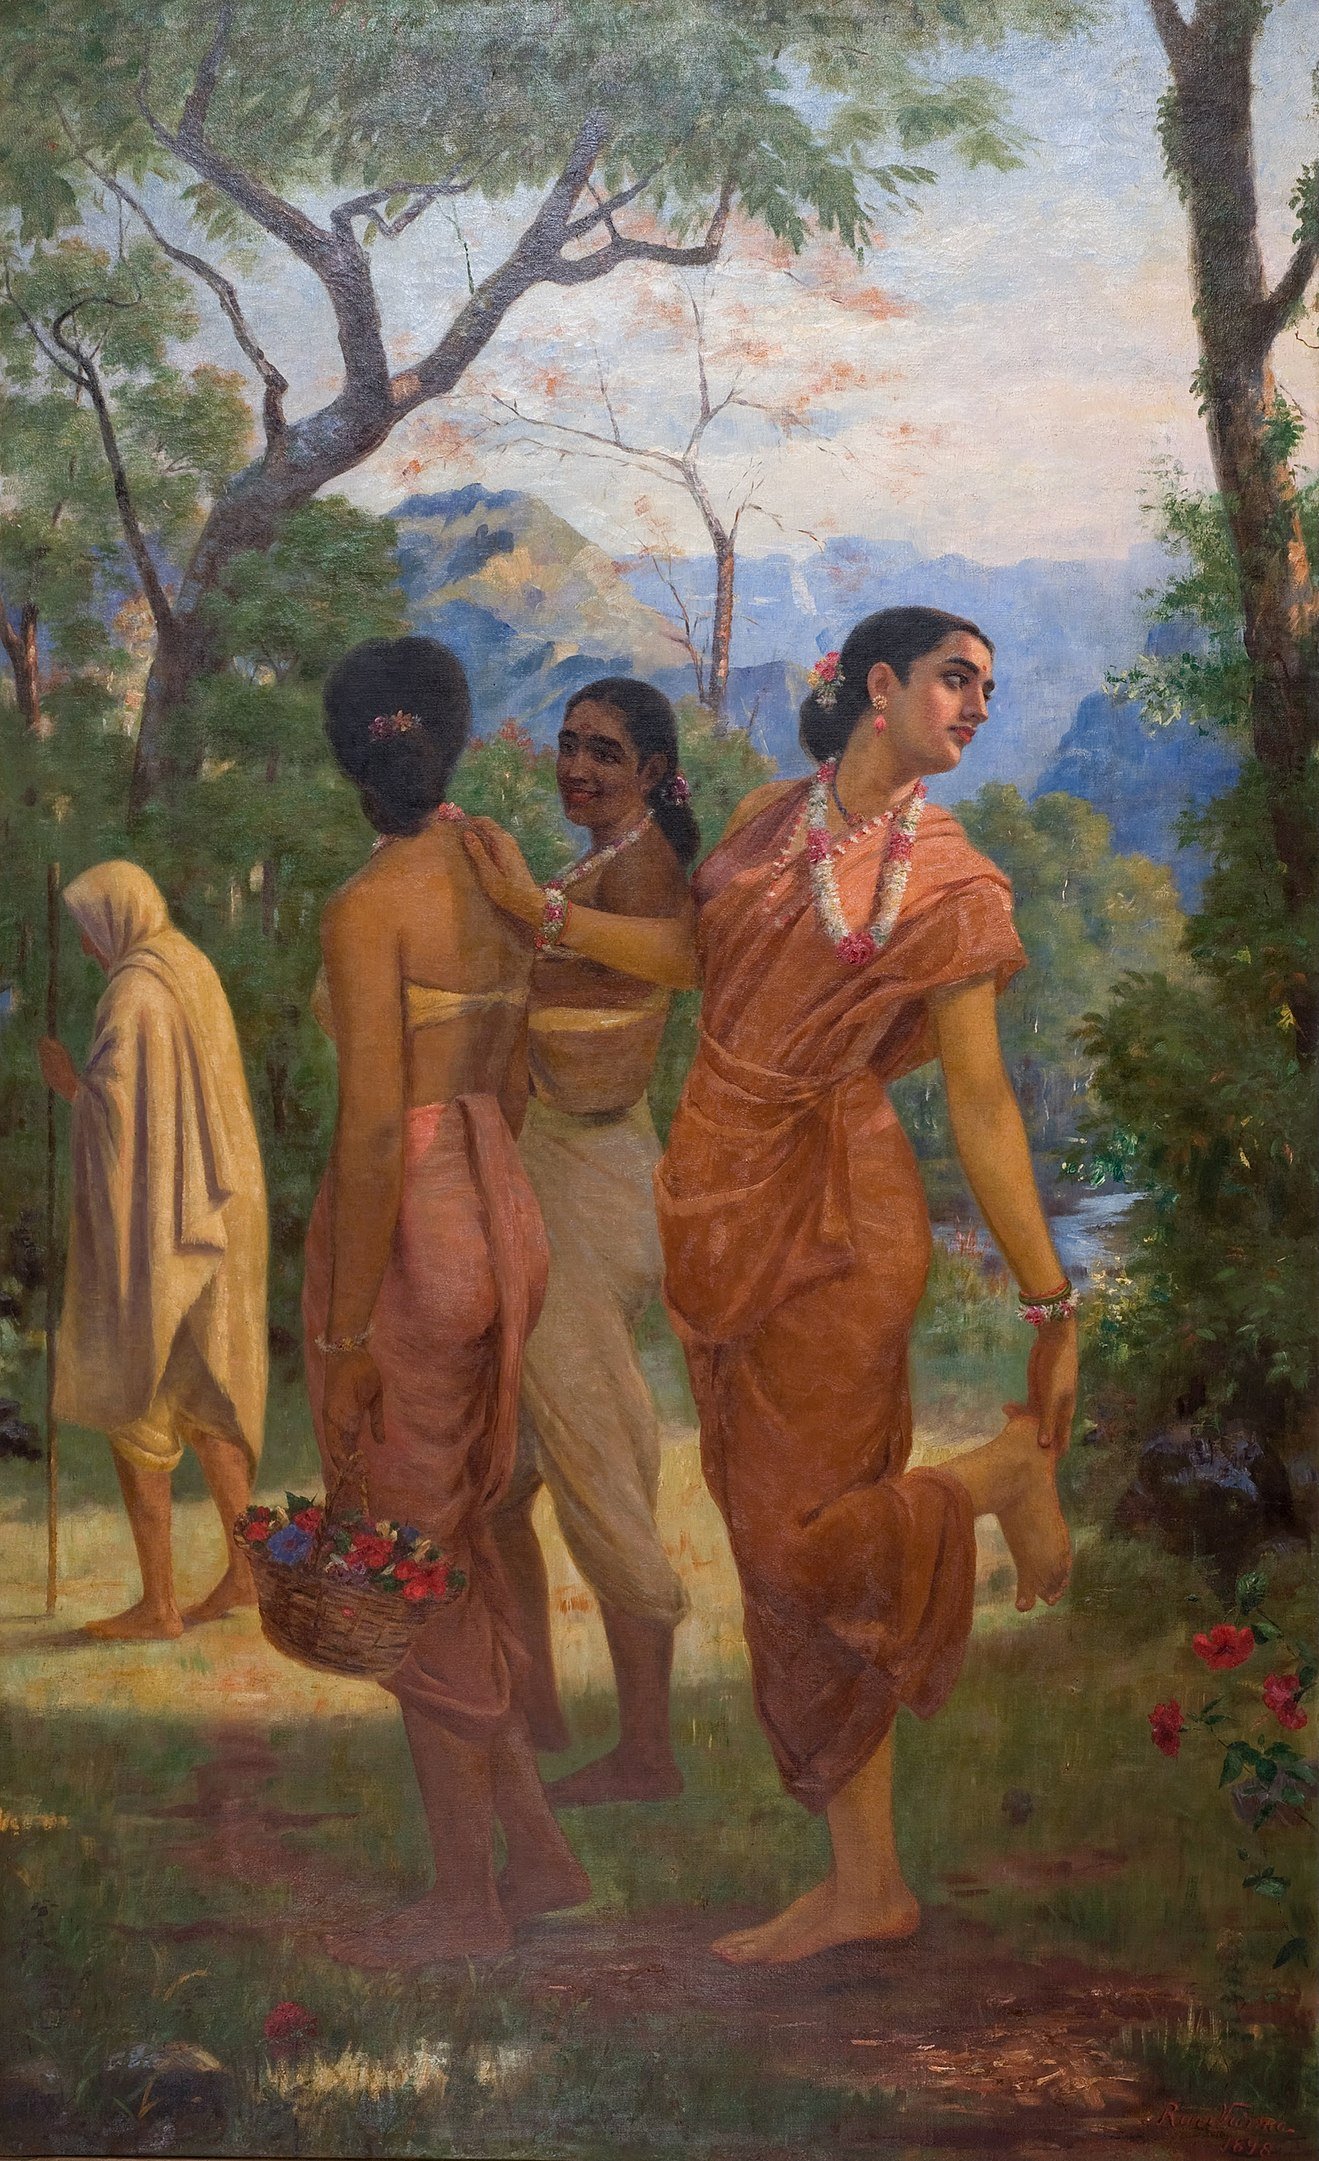 "Shakuntala" by Raja Ravi Varma